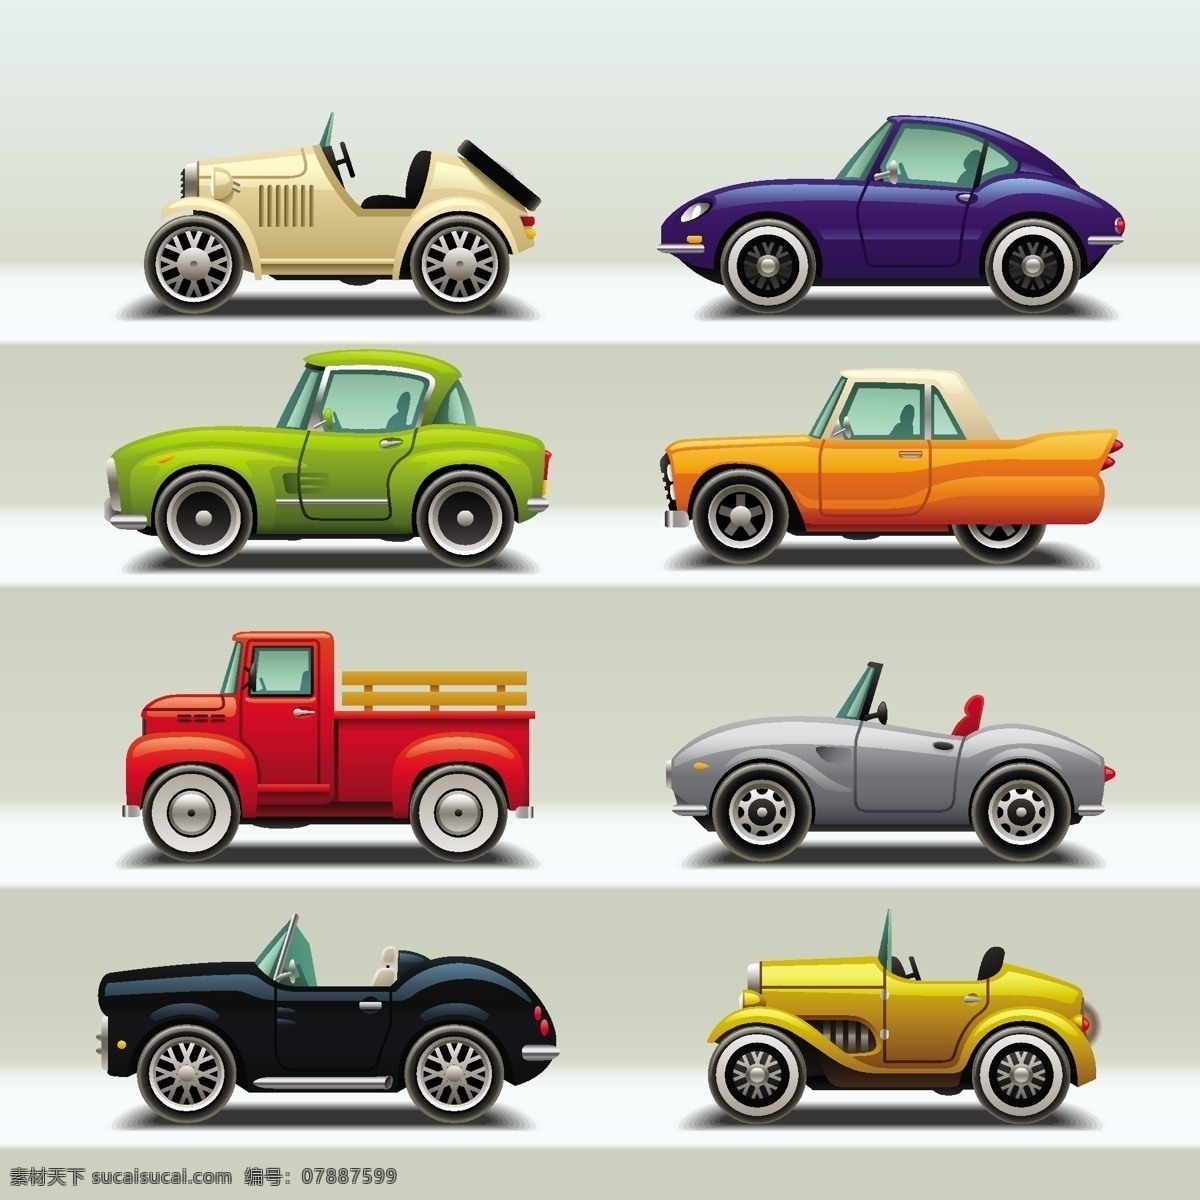 不同 种类 的卡 通 小汽车 标识 小轿车 运输工具 交通工具 彩色卡通风格 汽车标识 多种颜色 文化艺术 绘画书法